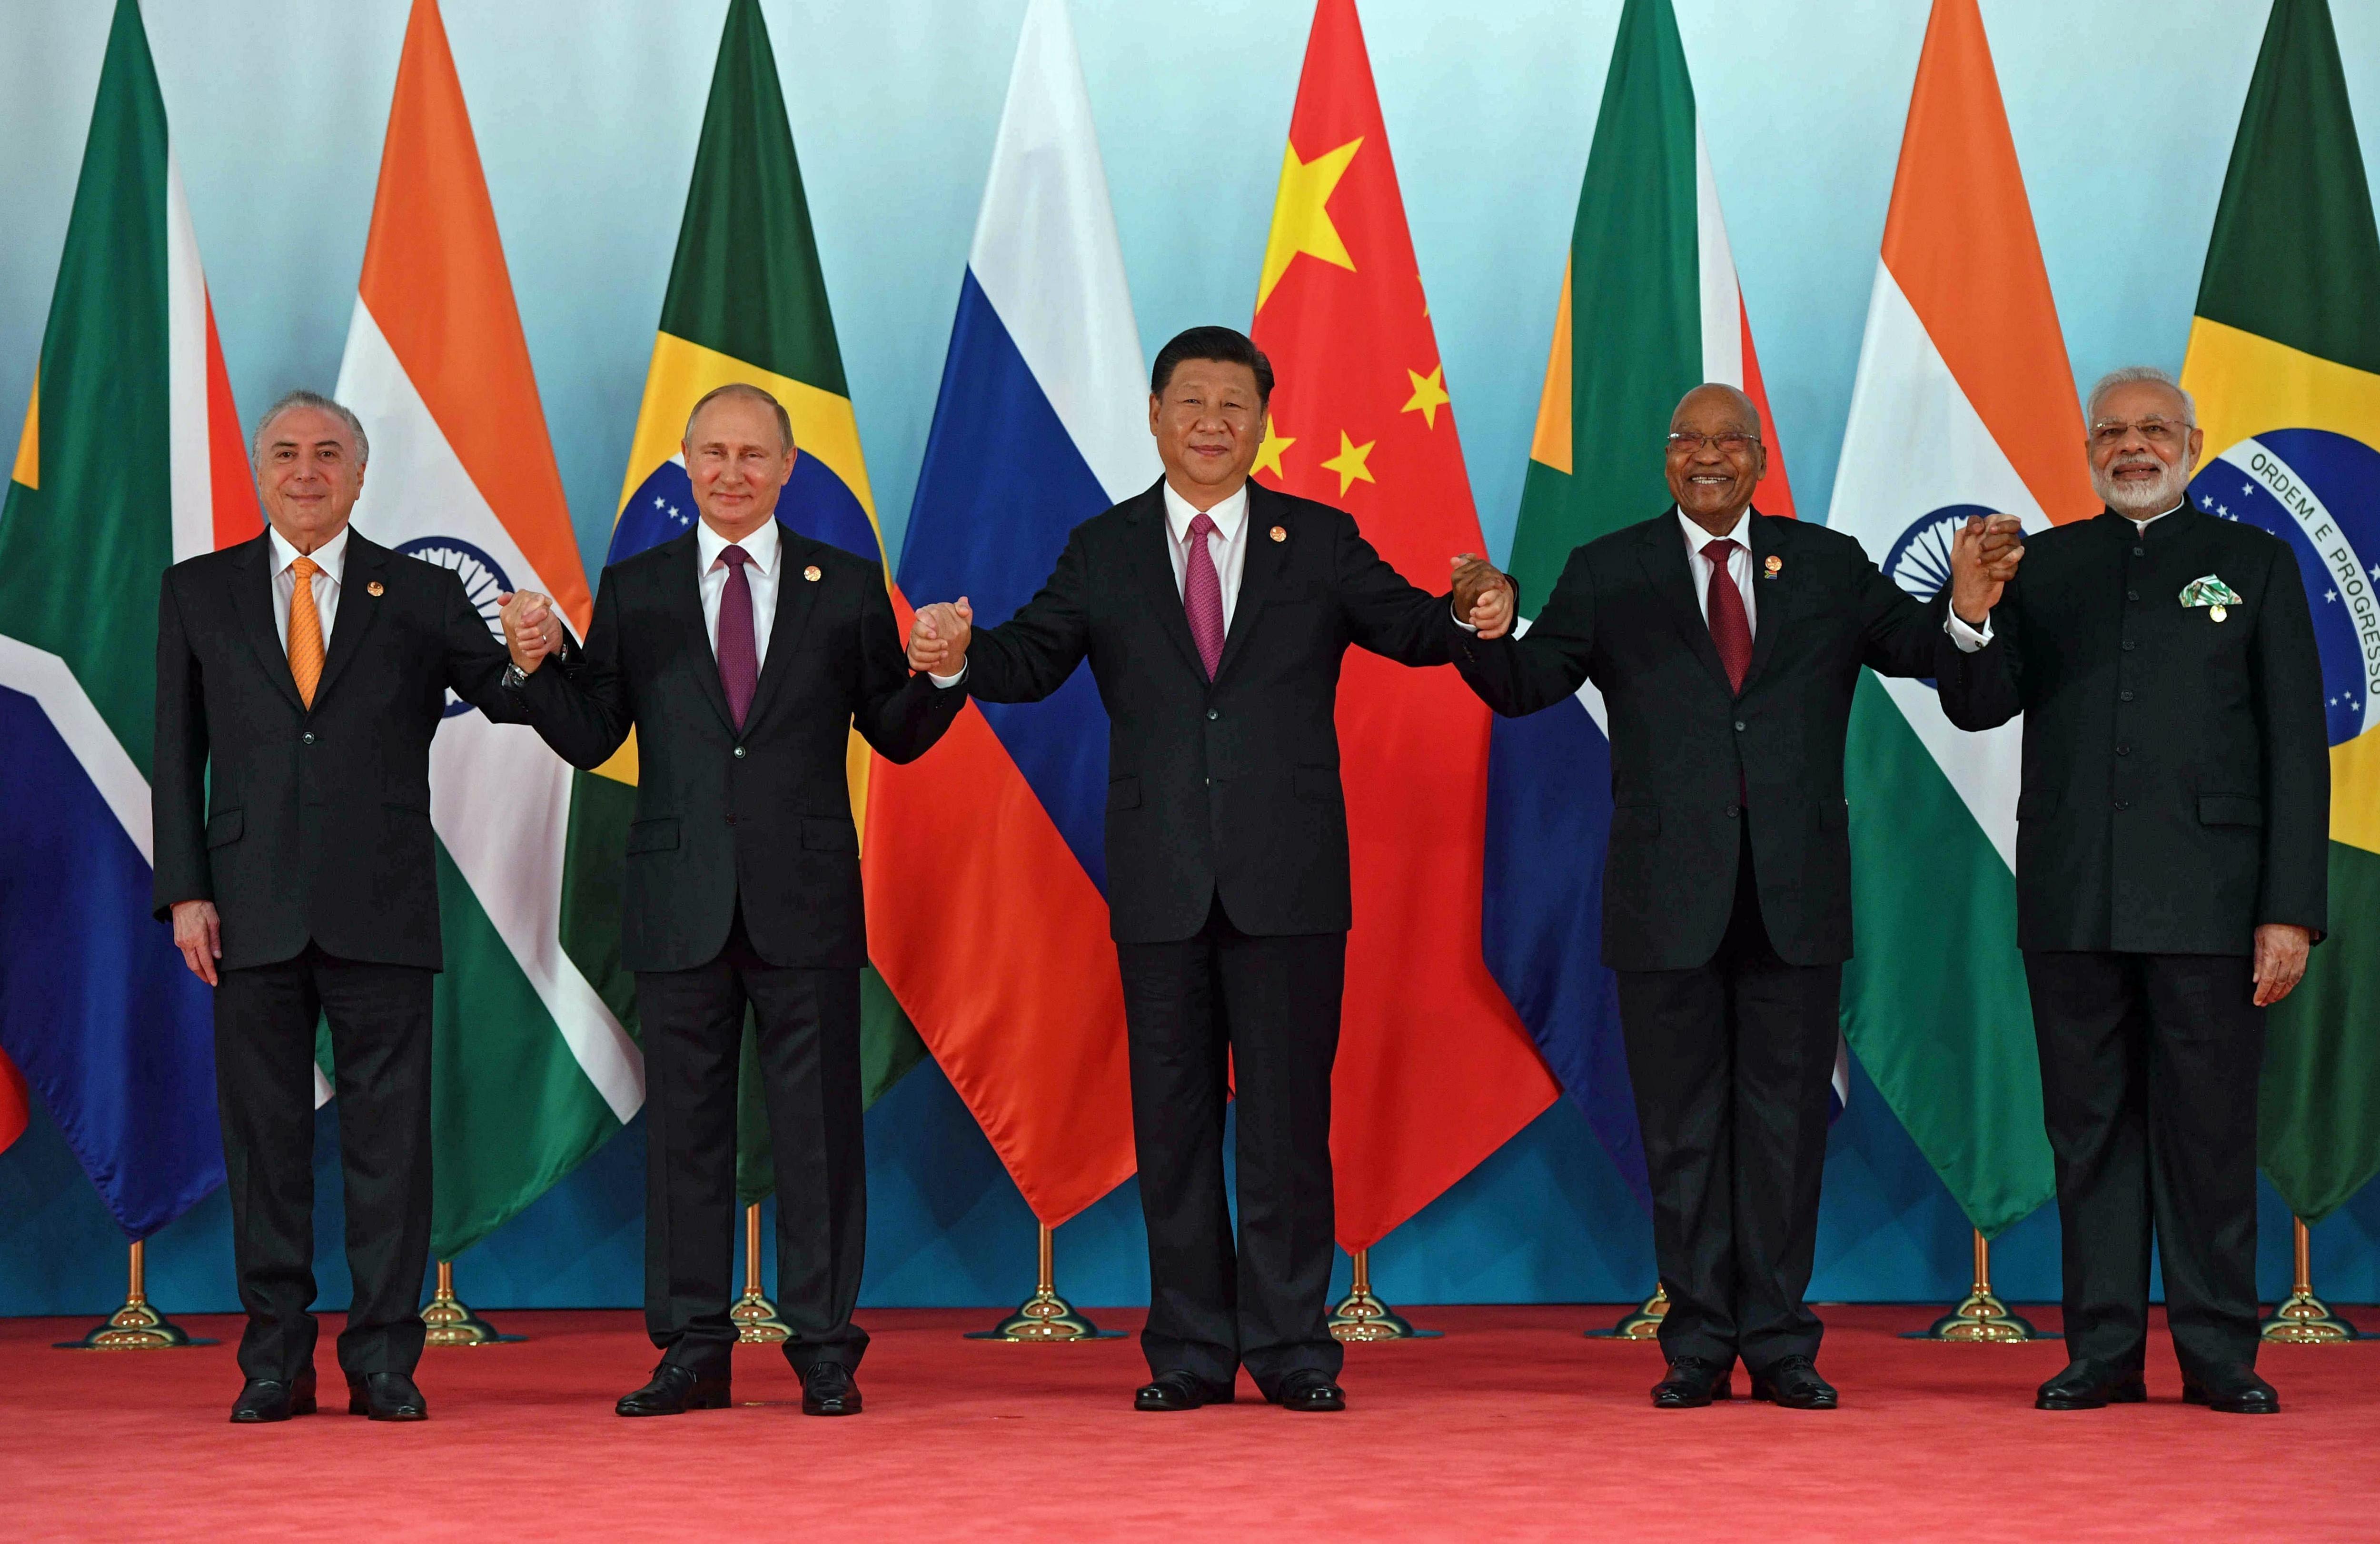 La IX Cumbre de los BRICS debate la creación de un BRICS Plus